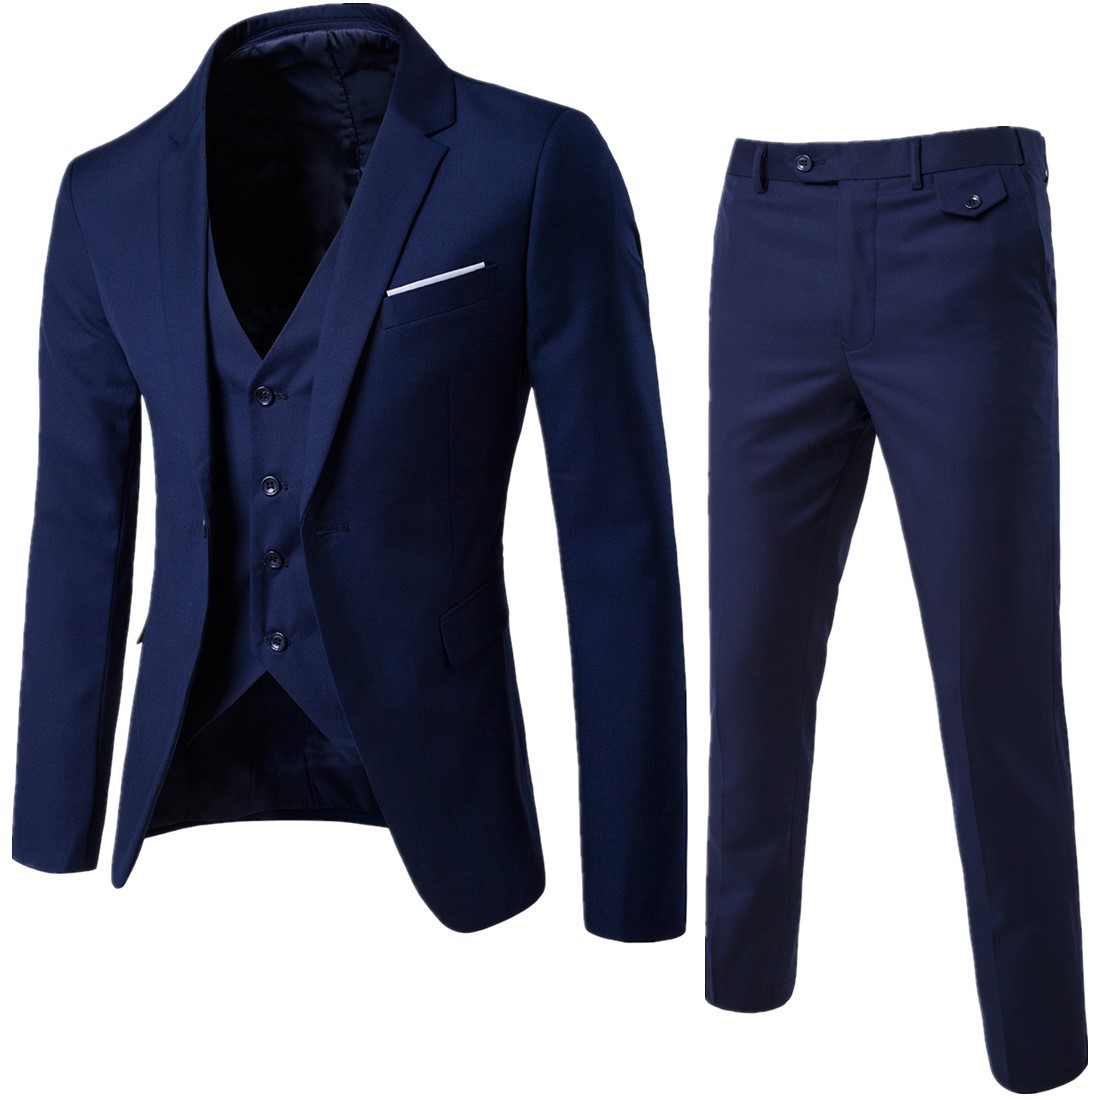 2019 foreign trade new men's fashion business two piece suit suit South Korean slim suit coat manufacturer direct sales